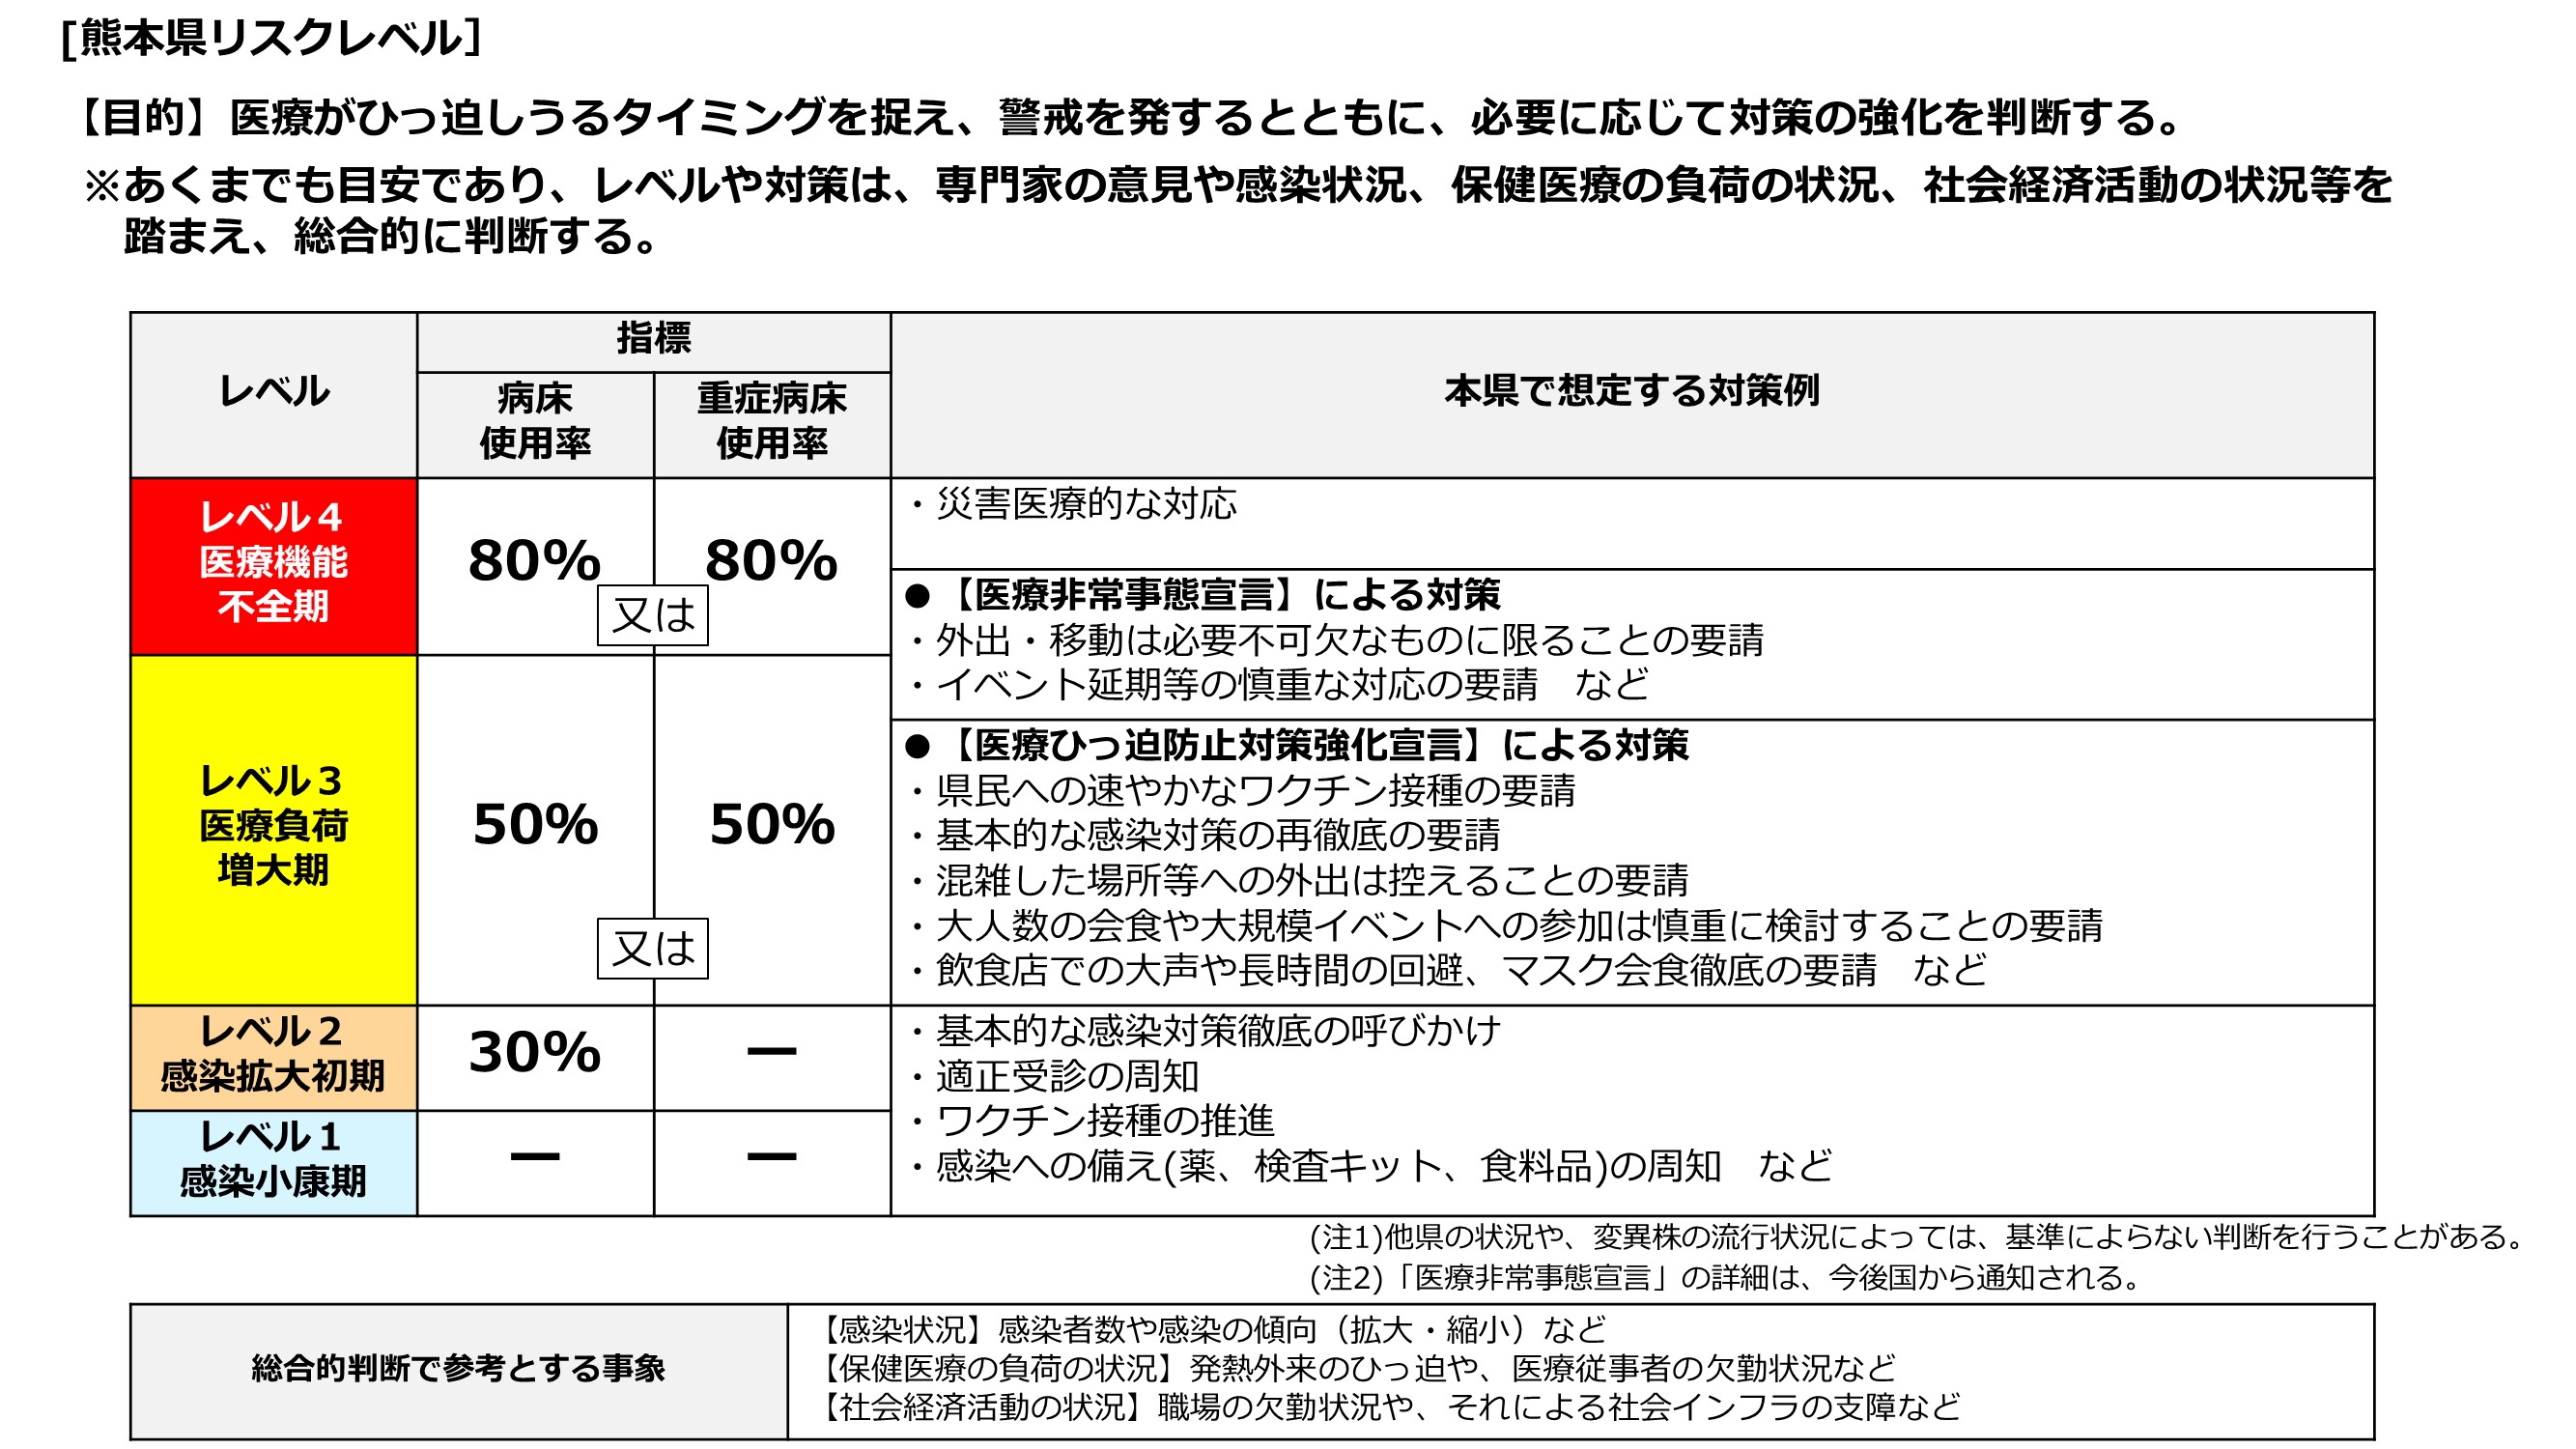 熊本県リスクレベル基準改定について（画像２）